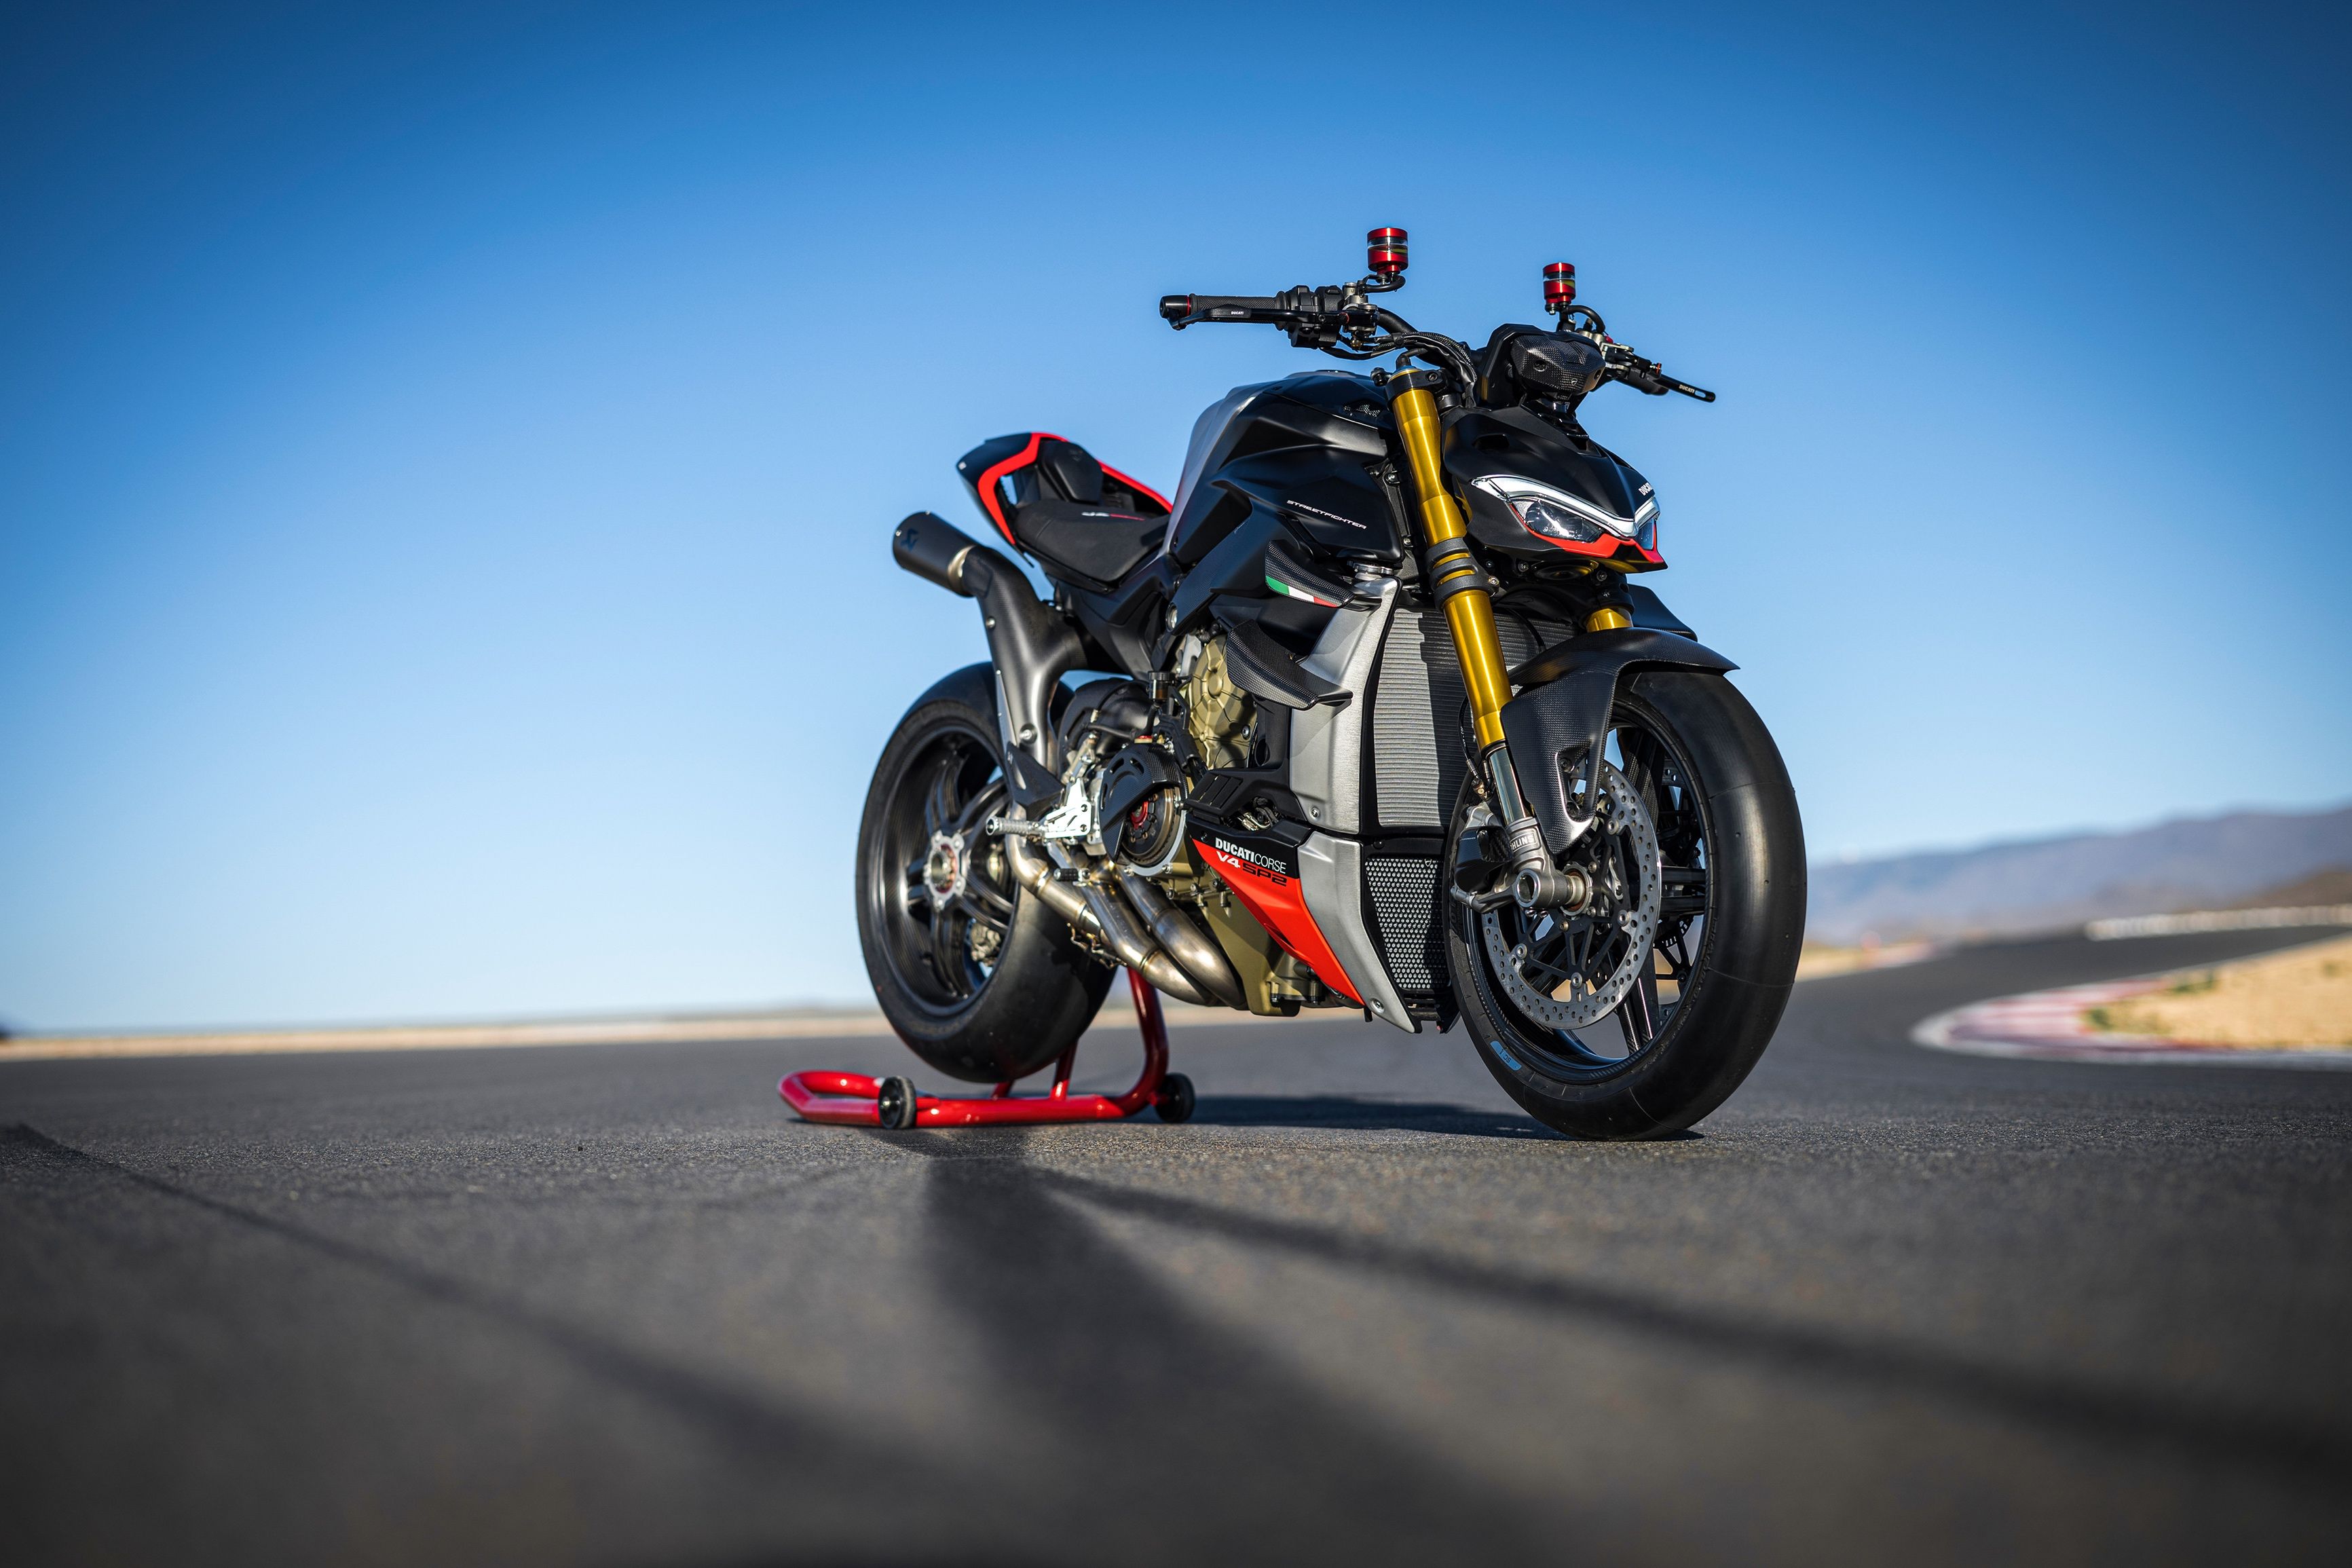 Personnalisez votre expérience de conduite avec le Streetfighter V4 grâce aux accessoires Ducati Performance 